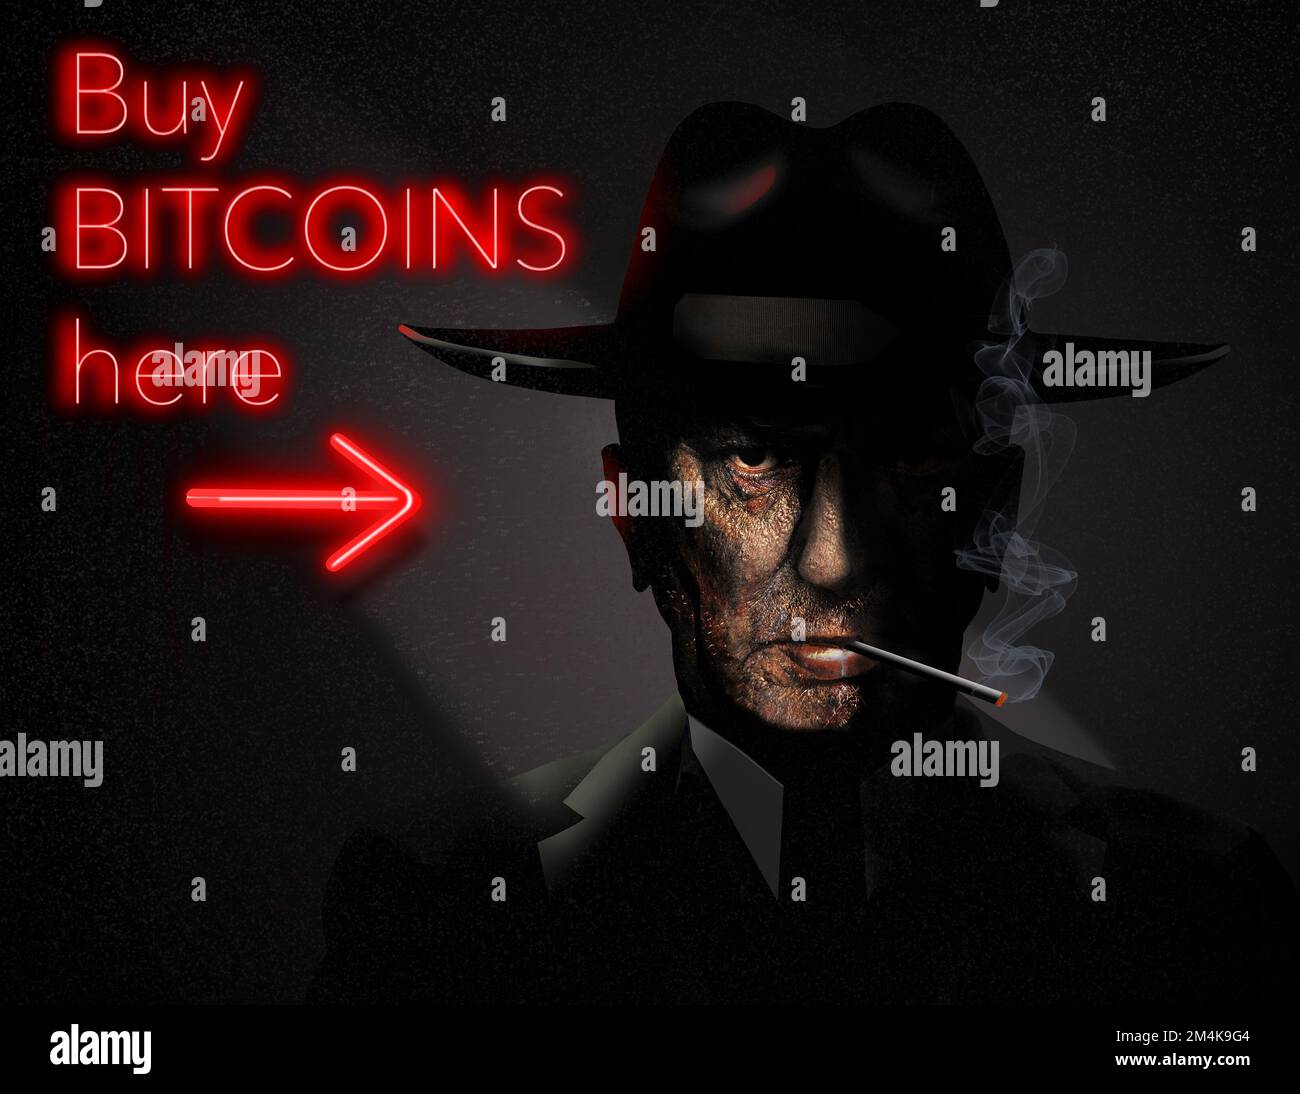 Ein Neonzeichen zeigt an, dass Sie in dieser 3-D-Abbildung über Bitcoin Bitcoins von einer unheimlich aussehenden und unzuverlässigen Quelle kaufen können. Stockfoto